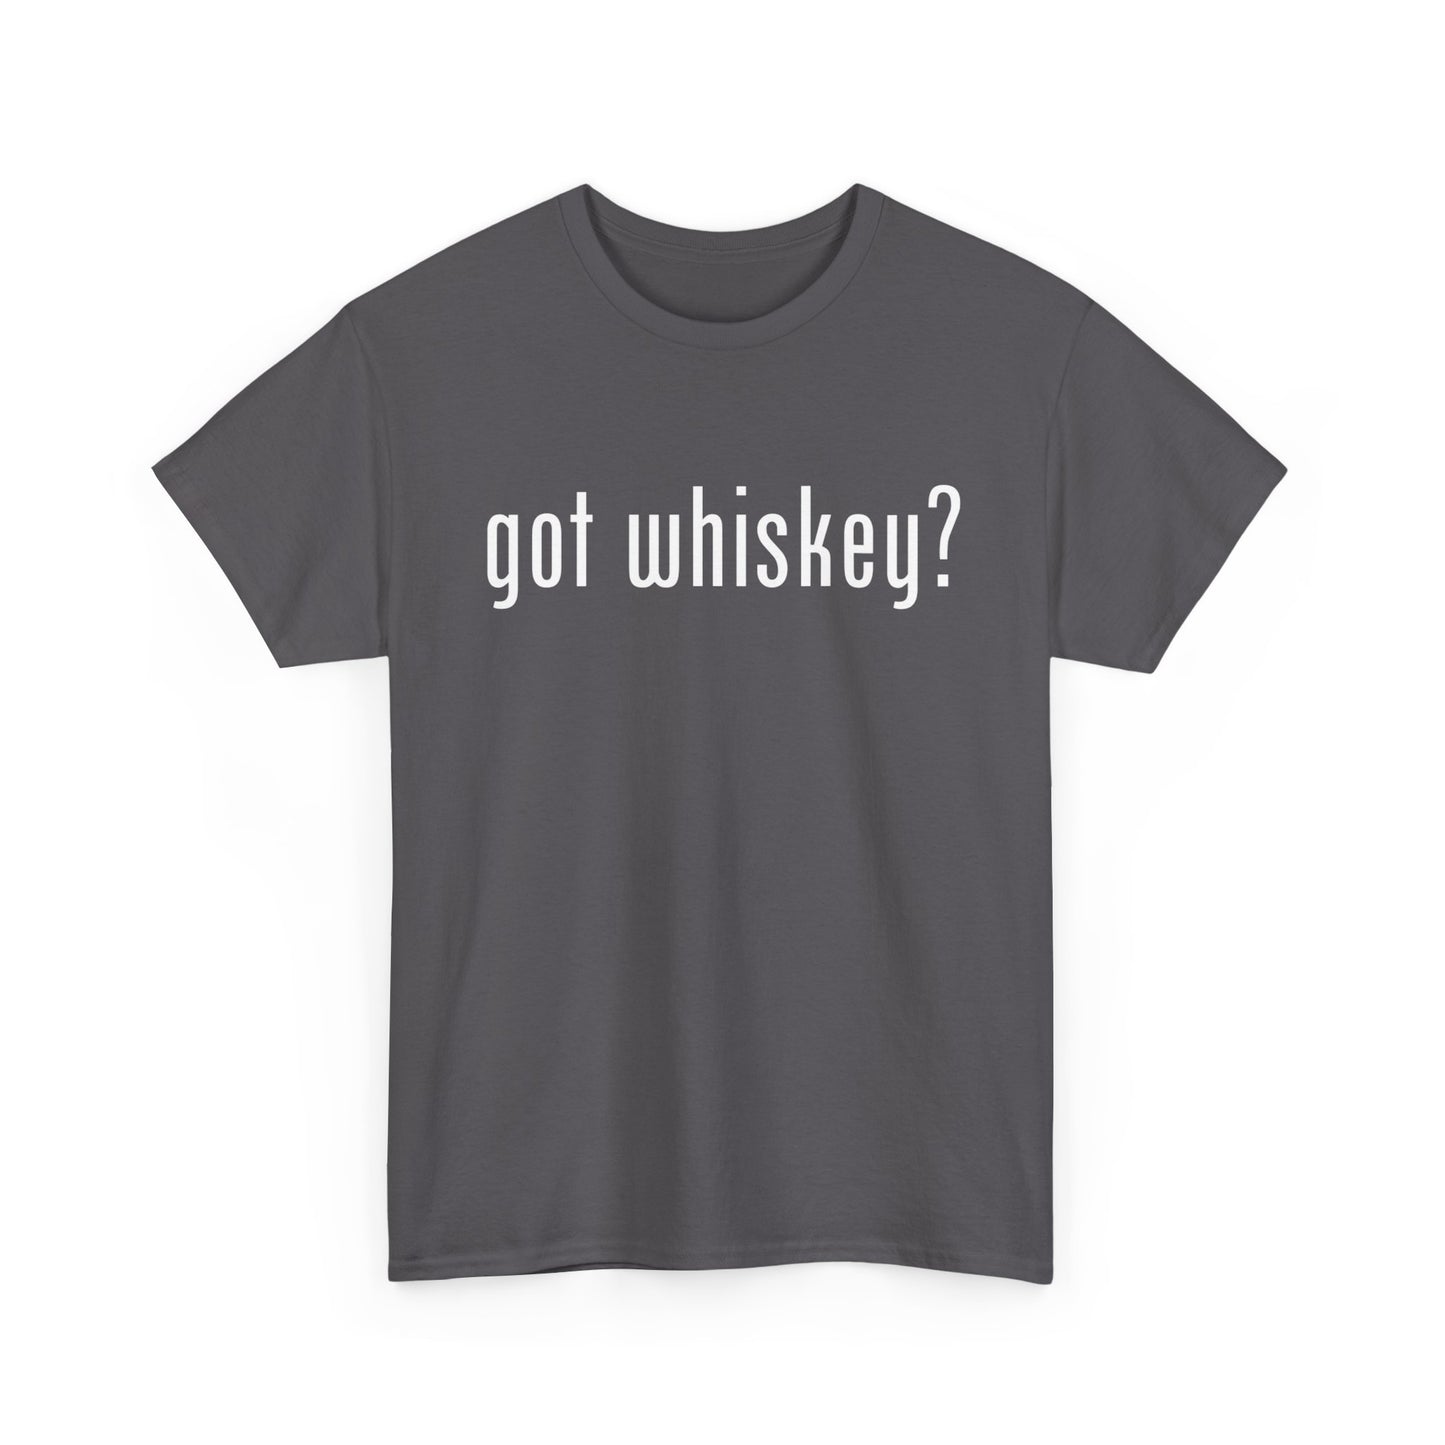 got whiskey?